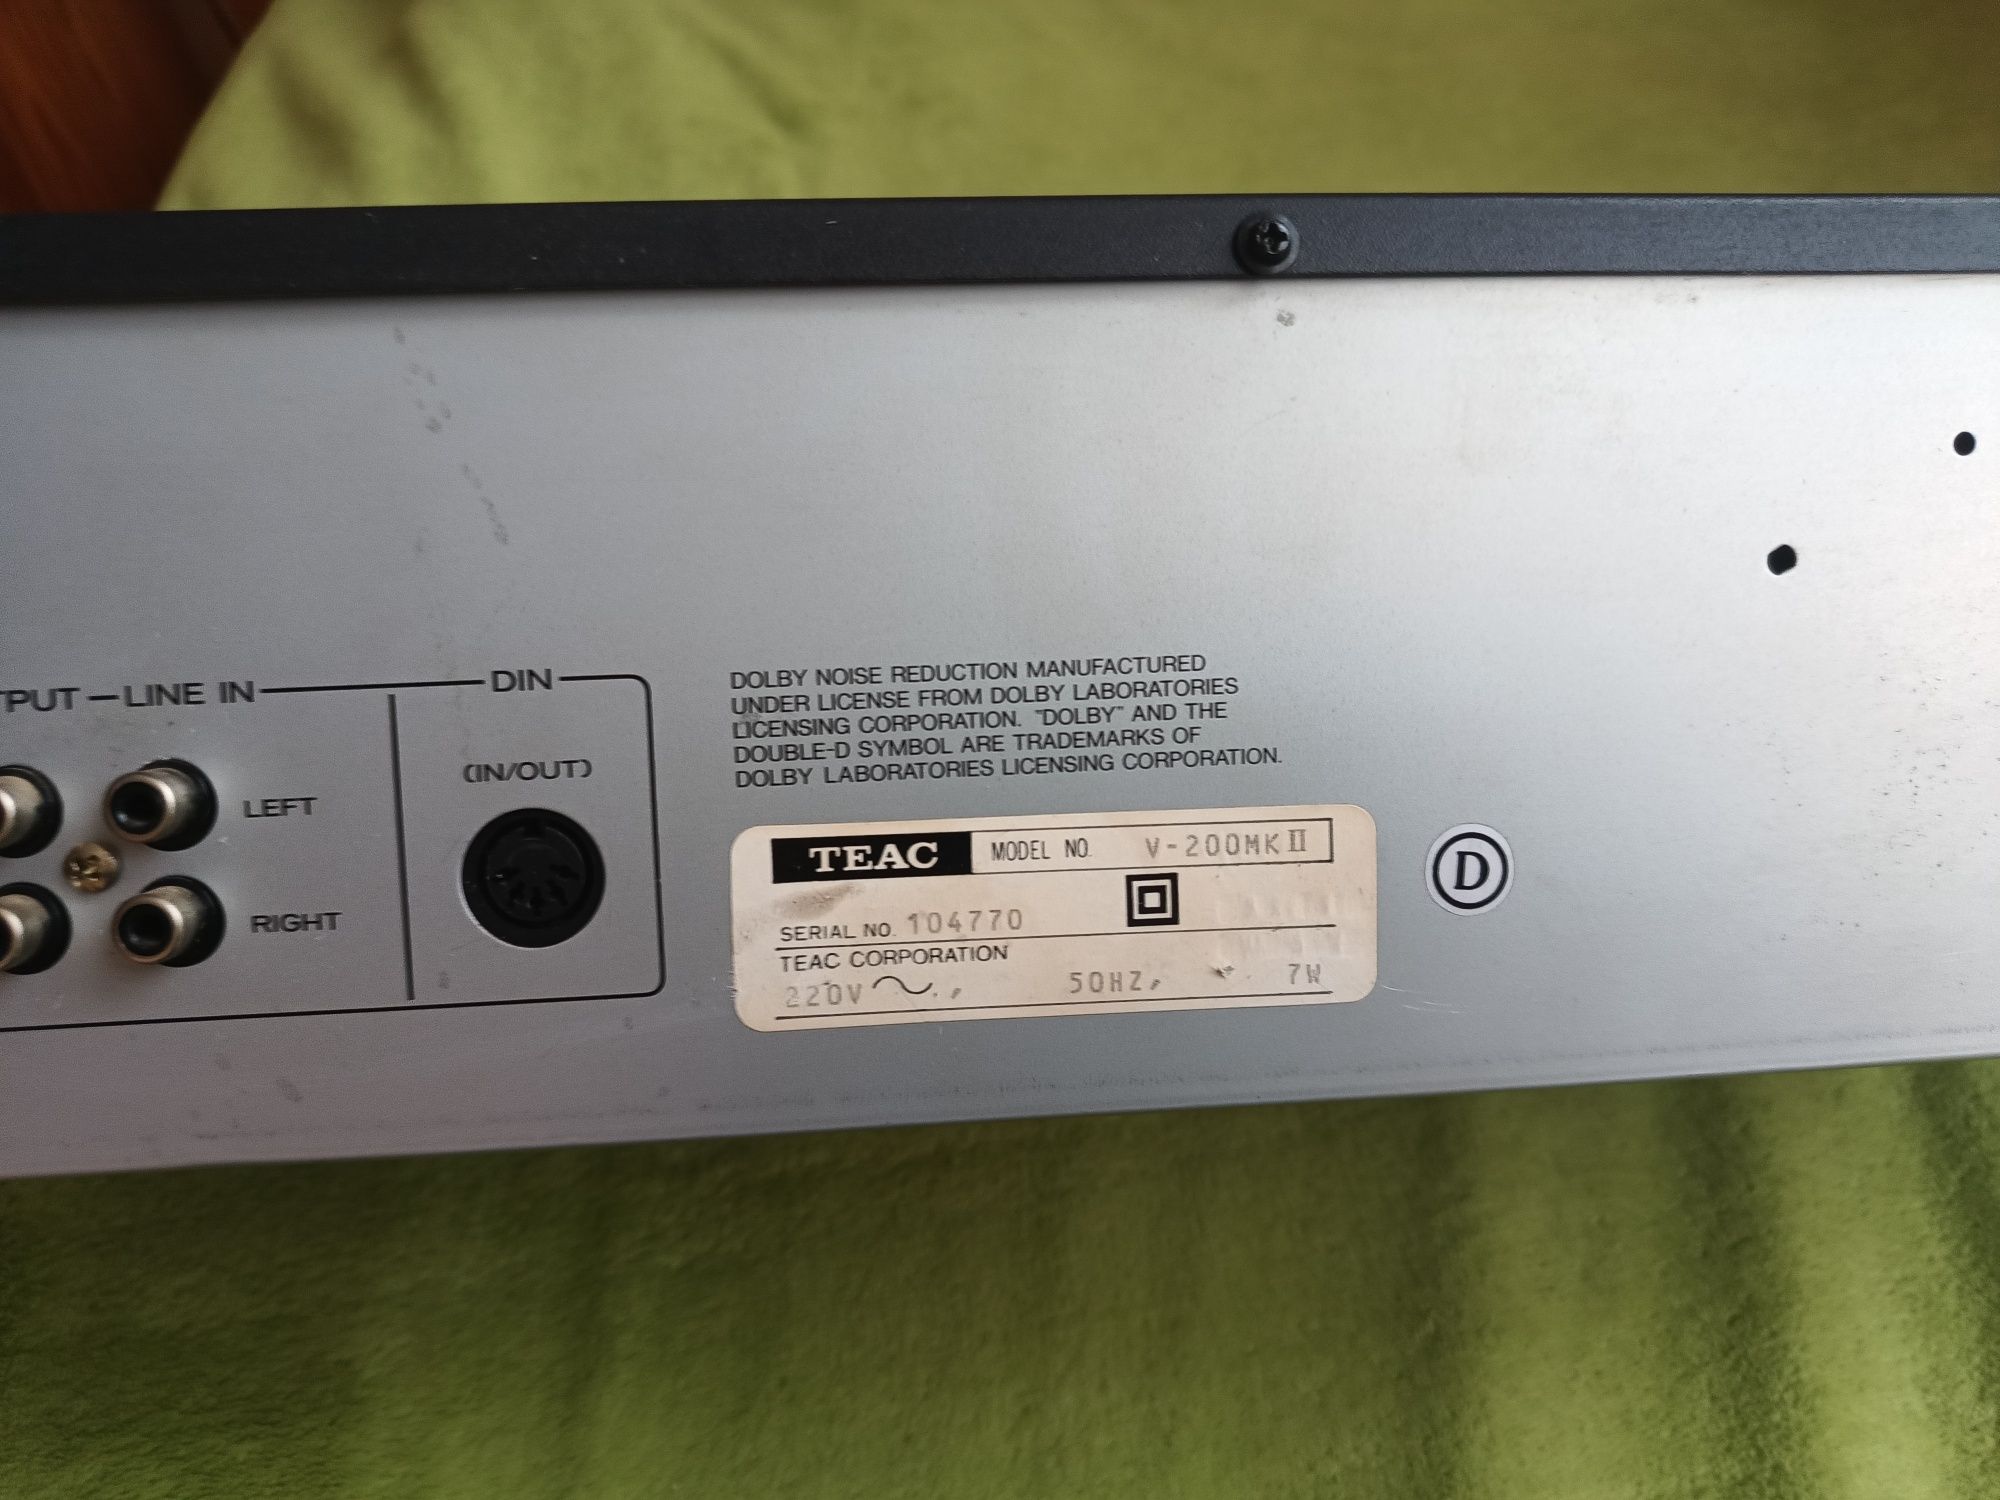 Magnetofon Teac V200 Mk II Stereo Casette Deck